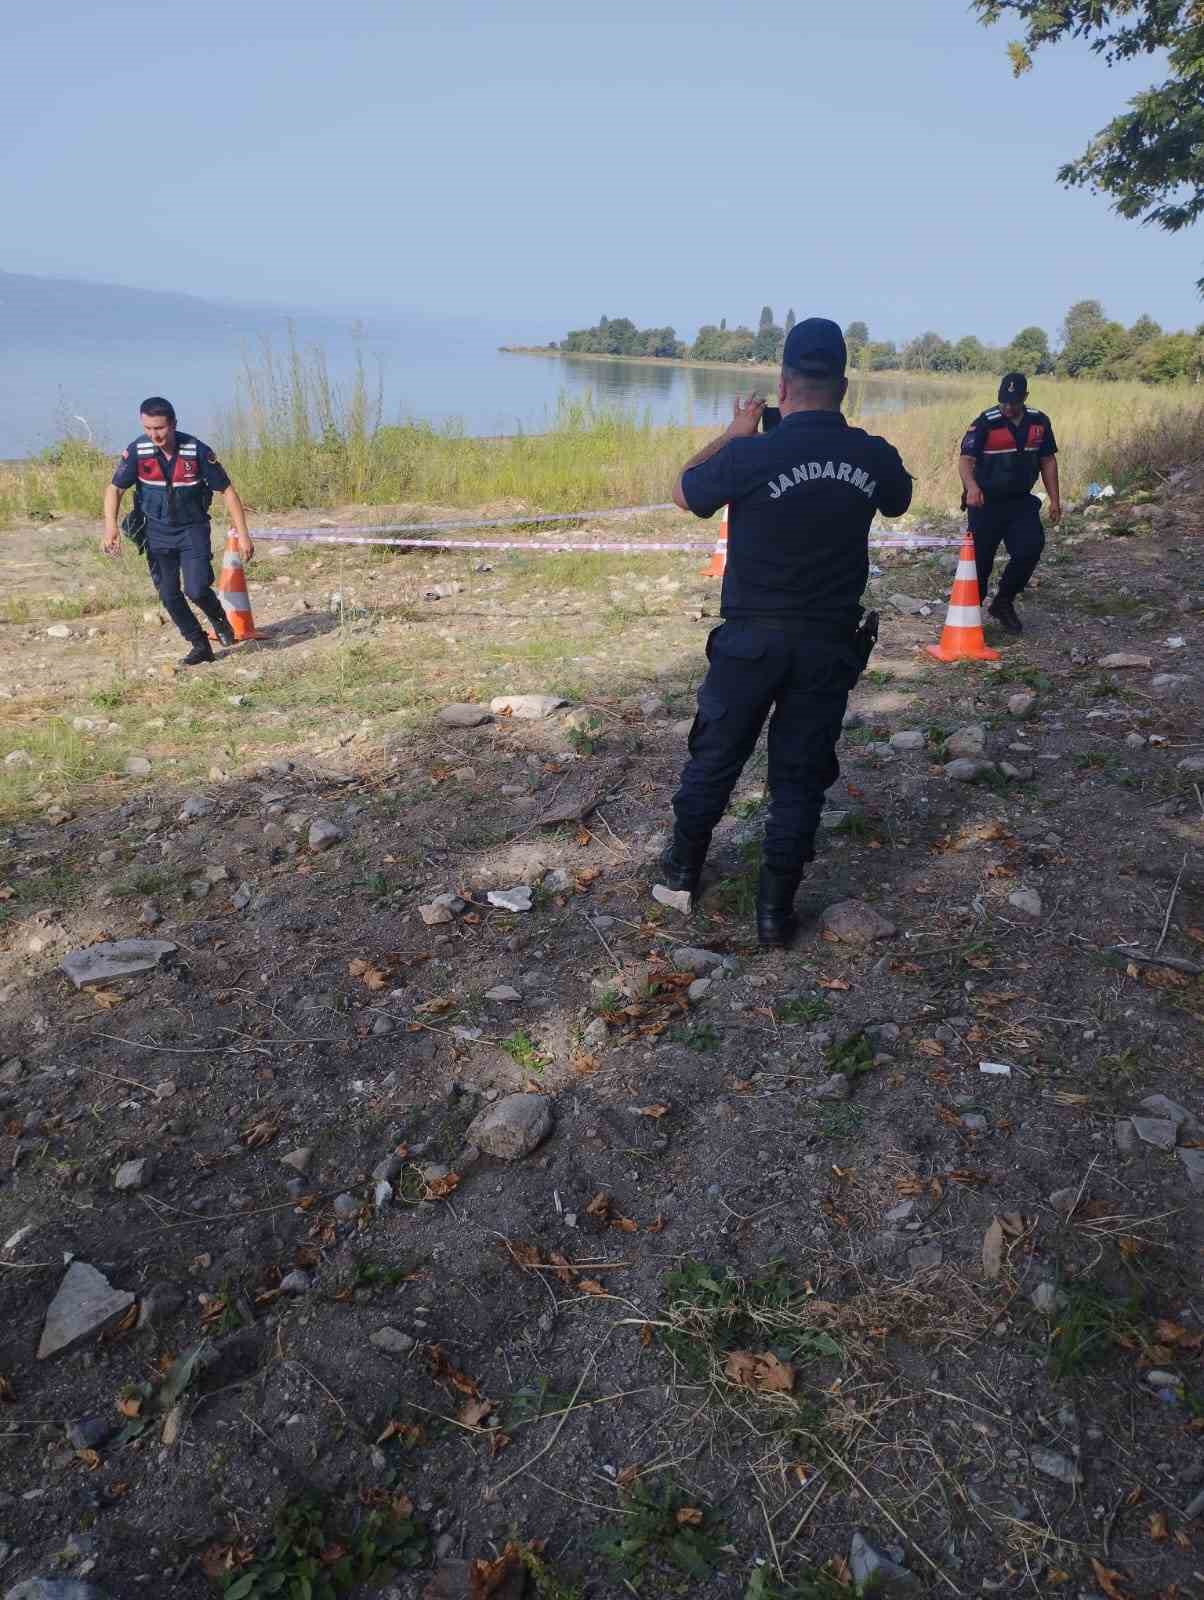 Gölün içinde patlamamış el bombası bulundu